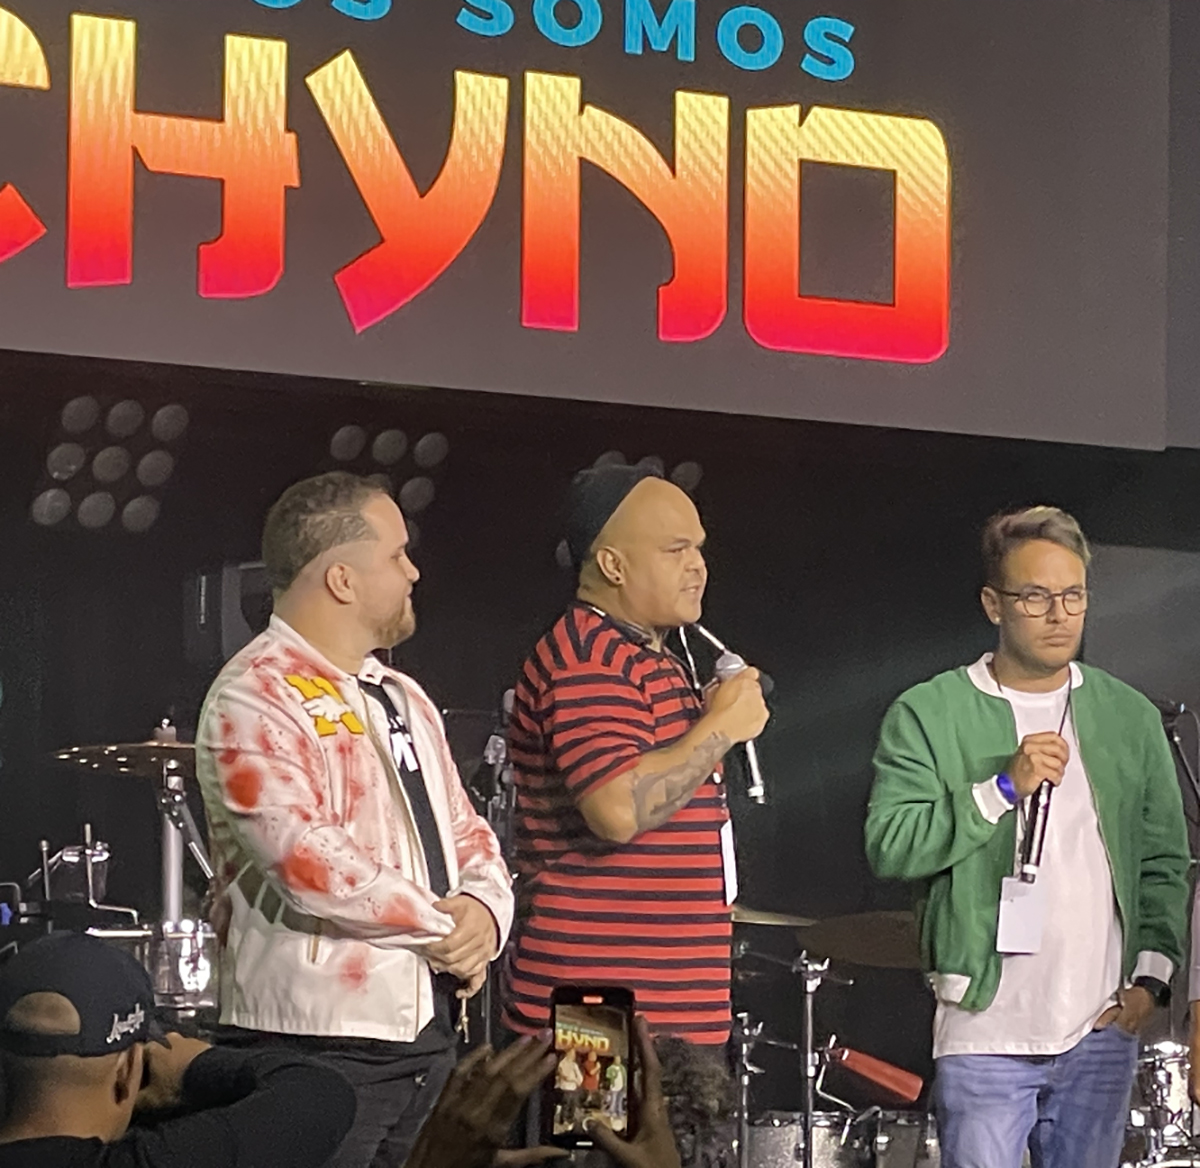 Jefferson Cárdenas, Richard Acosta y Nangel Menes, amigos de la infancia y organizadores del concierto de Chyno Miranda.